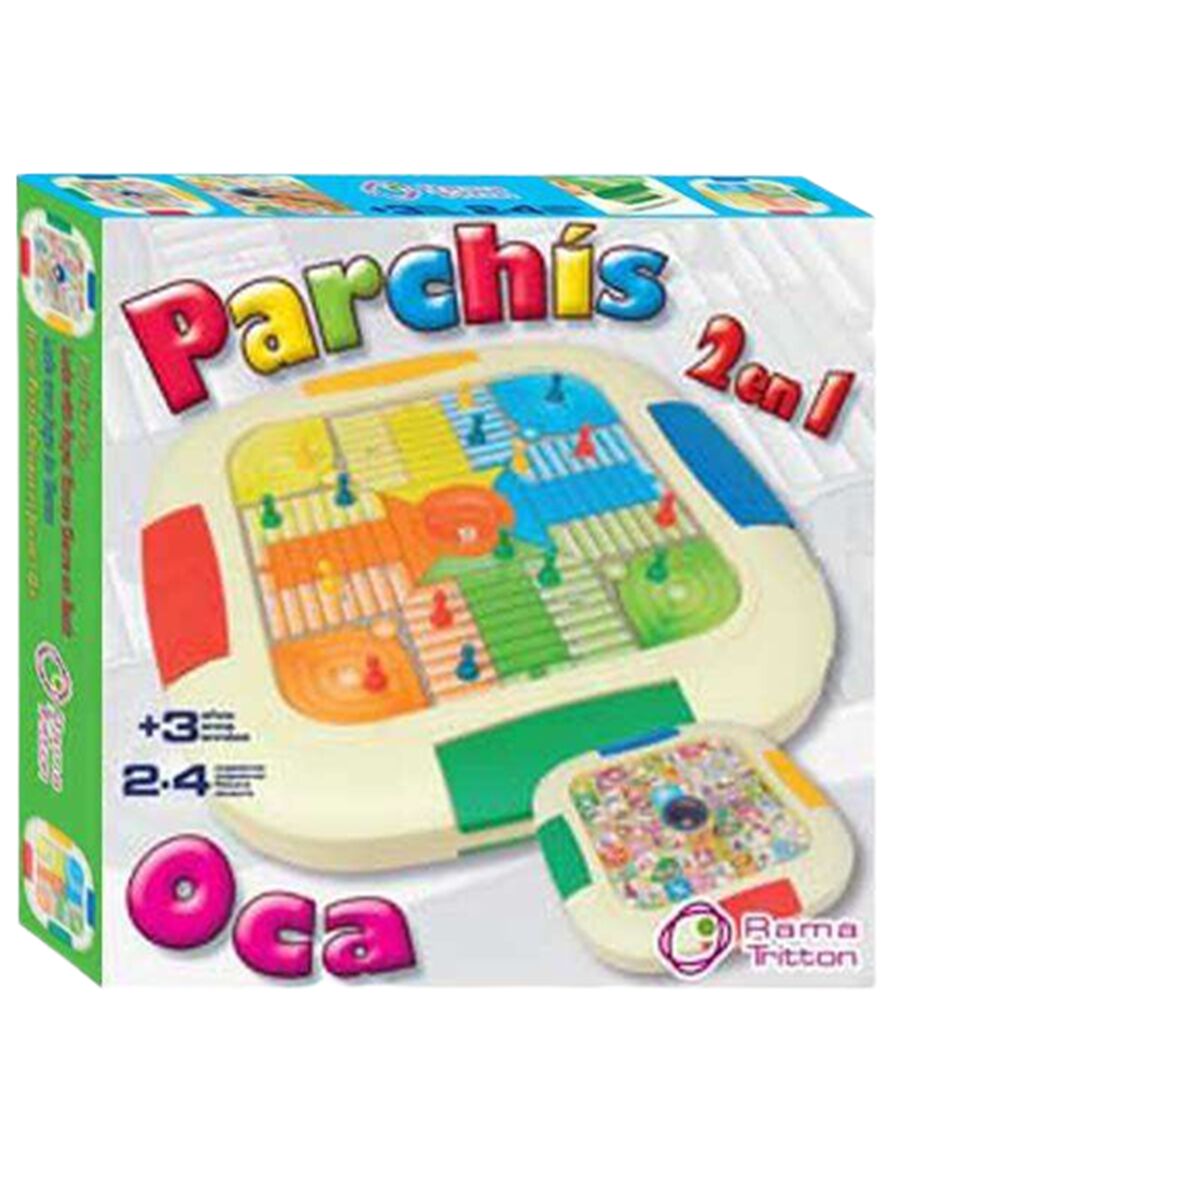 Parchís och Oca Board 30,5 x 30,5 x 5,5 cm-Leksaker och spel, Spel och tillbehör-BigBuy Fun-peaceofhome.se